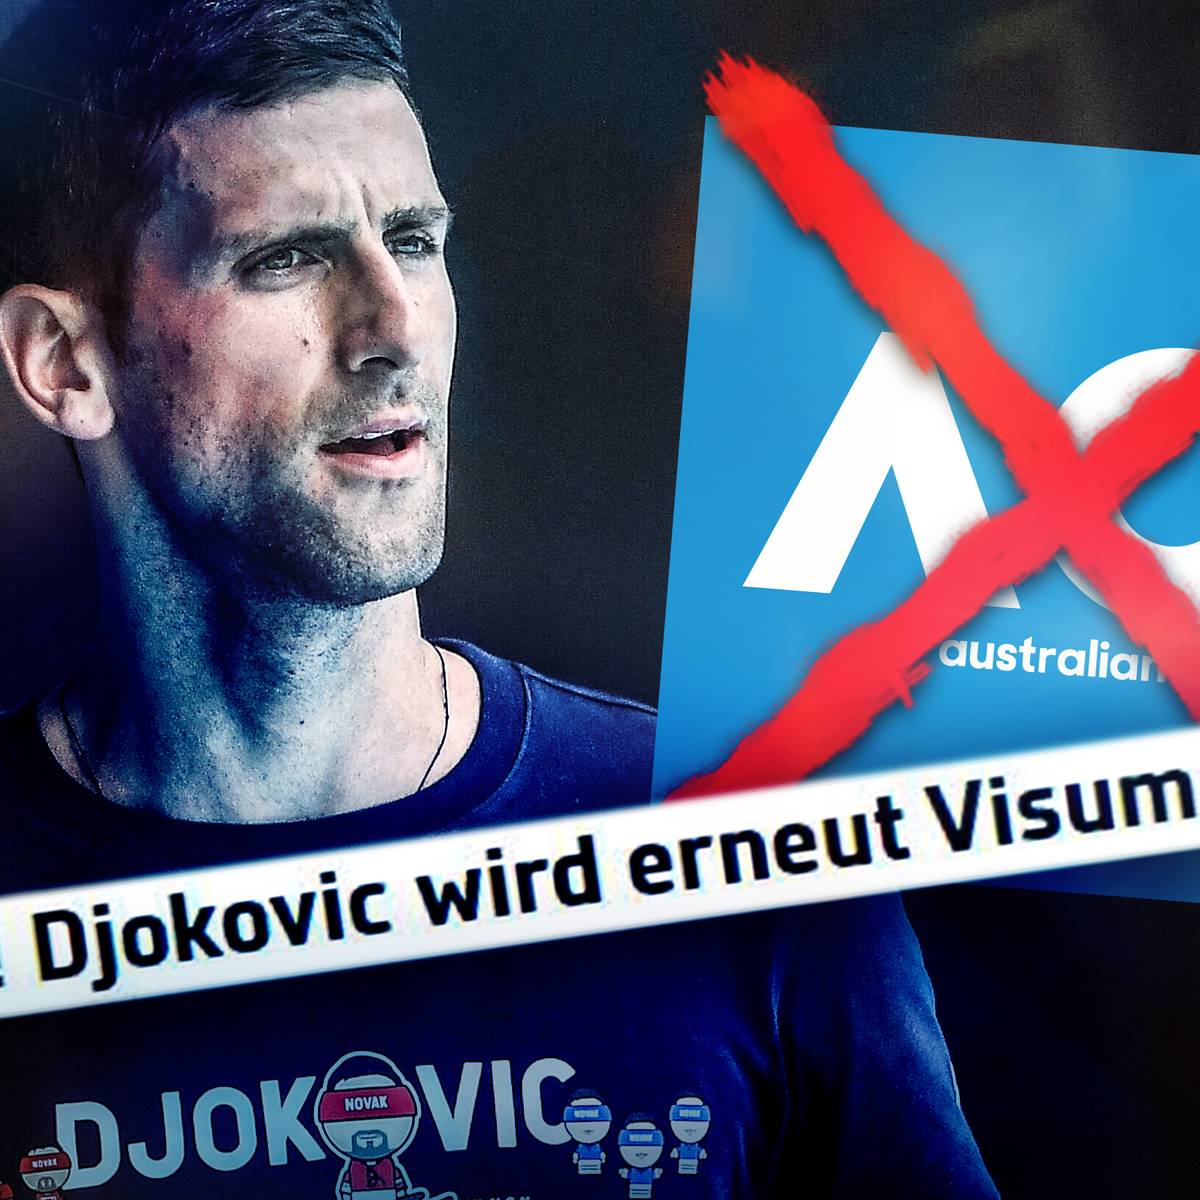 "Ist er Gott!?" Djokovics Verhalten sorgt für Aufregung